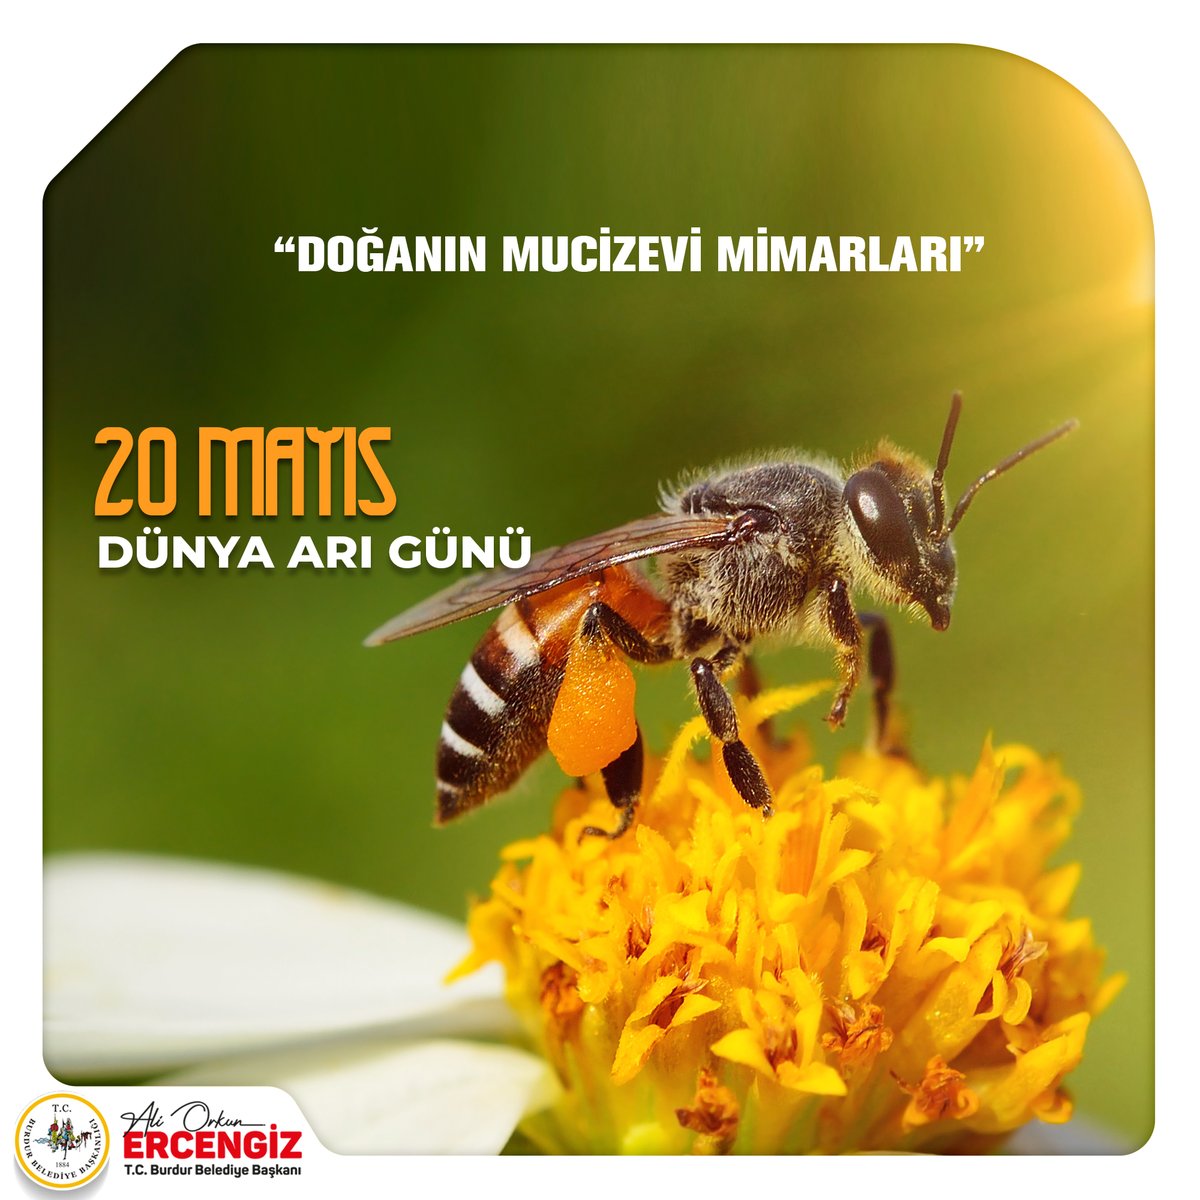 Arı varsa, hayat vardır… 🐝🐝 Yaşamımız için bu kadar kritik bir rol üstlenen arıların günü kutlu olsun. @orkunercengiz